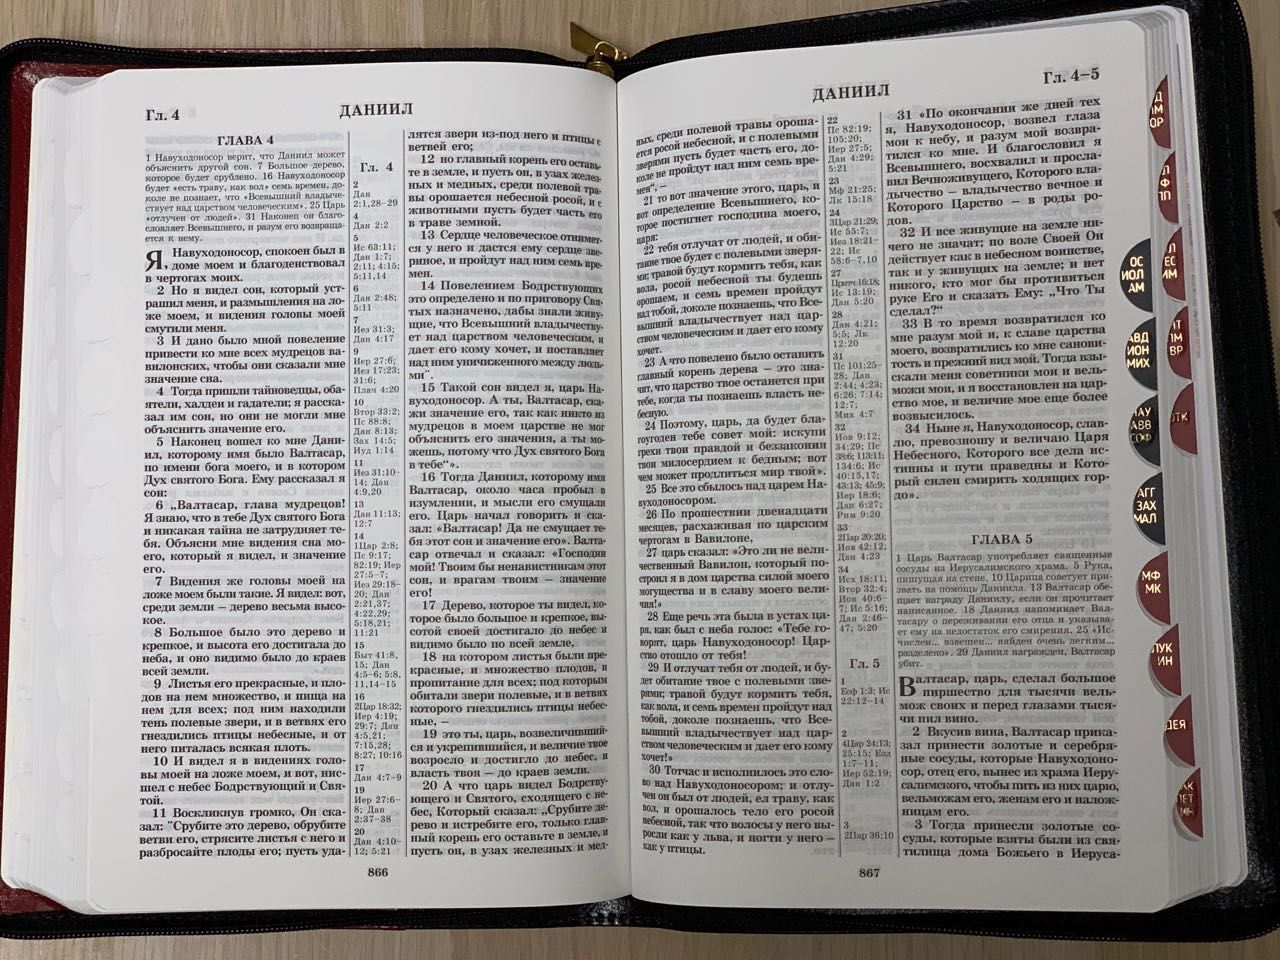 БИБЛИЯ 077DTzti формат, переплет из натуральной кожи на молнии с индексами, надпись золотом "Библия", цвет черный со светло-коричневой вставкой, большой формат, 180*260 мм, цветные карты, крупный шрифт